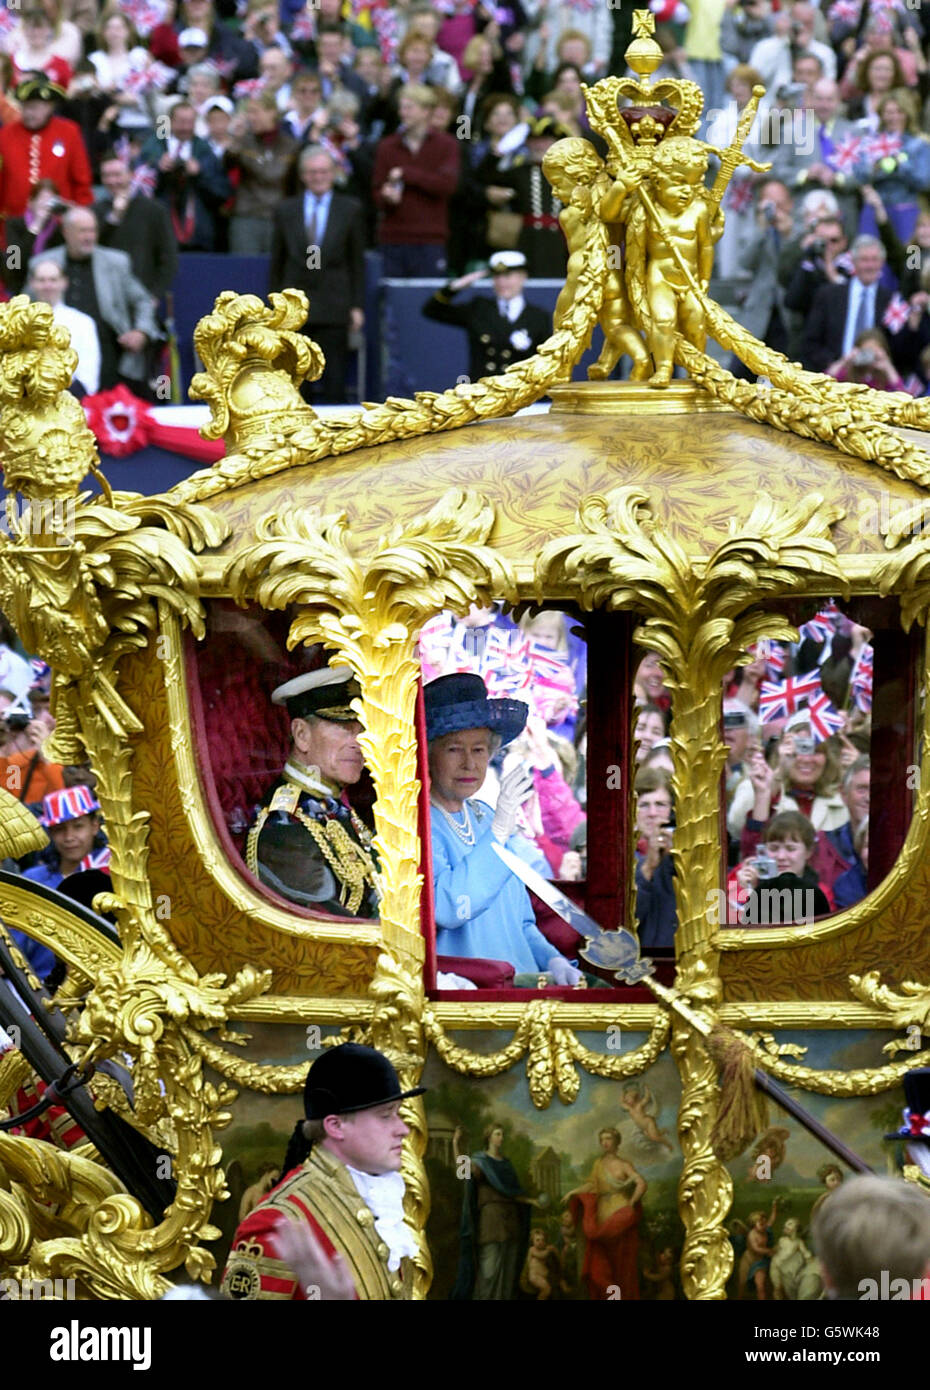 Die britische Königin Elizabeth II. Fährt im Gold State Bus vom Buckingham Palace zur St. Paul's Cathedral, um Thanksgiving zu feiern, um ihr goldenes Jubiläum zu feiern. * der Wagen wurde 1762 für König Georg III. Gebaut und wurde nur zweimal von der Königin benutzt - für ihre Krönung und ihr Silbernes Jubiläum. Später, nach dem Mittagessen in Guildhall in der City of London, wird sie eine Parade und Karneval entlang der Mall beobachten. Am Montagabend versammelten sich mehr als eine Million Menschen im Zentrum Londons, um das Konzert der Party im Palast zu hören und ein spektakuläres Feuerwerk zu sehen. Stockfoto